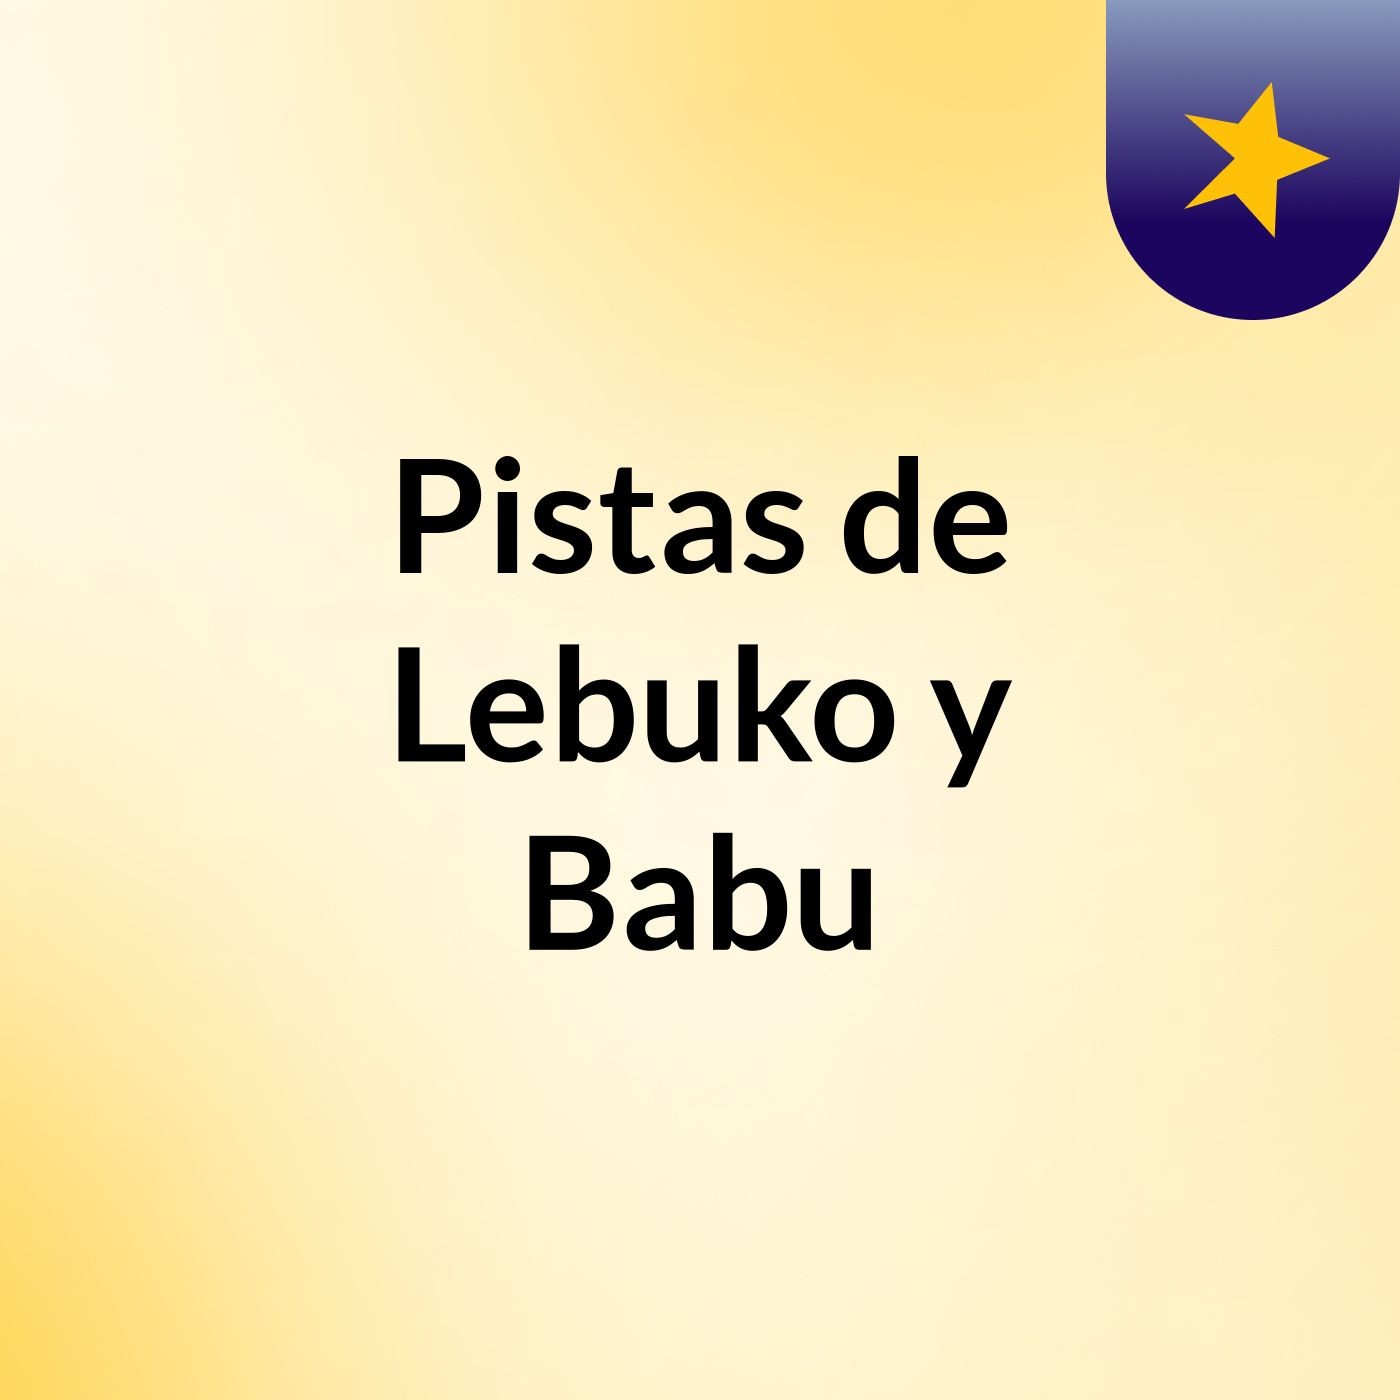 Pistas de Lebuko y Babu